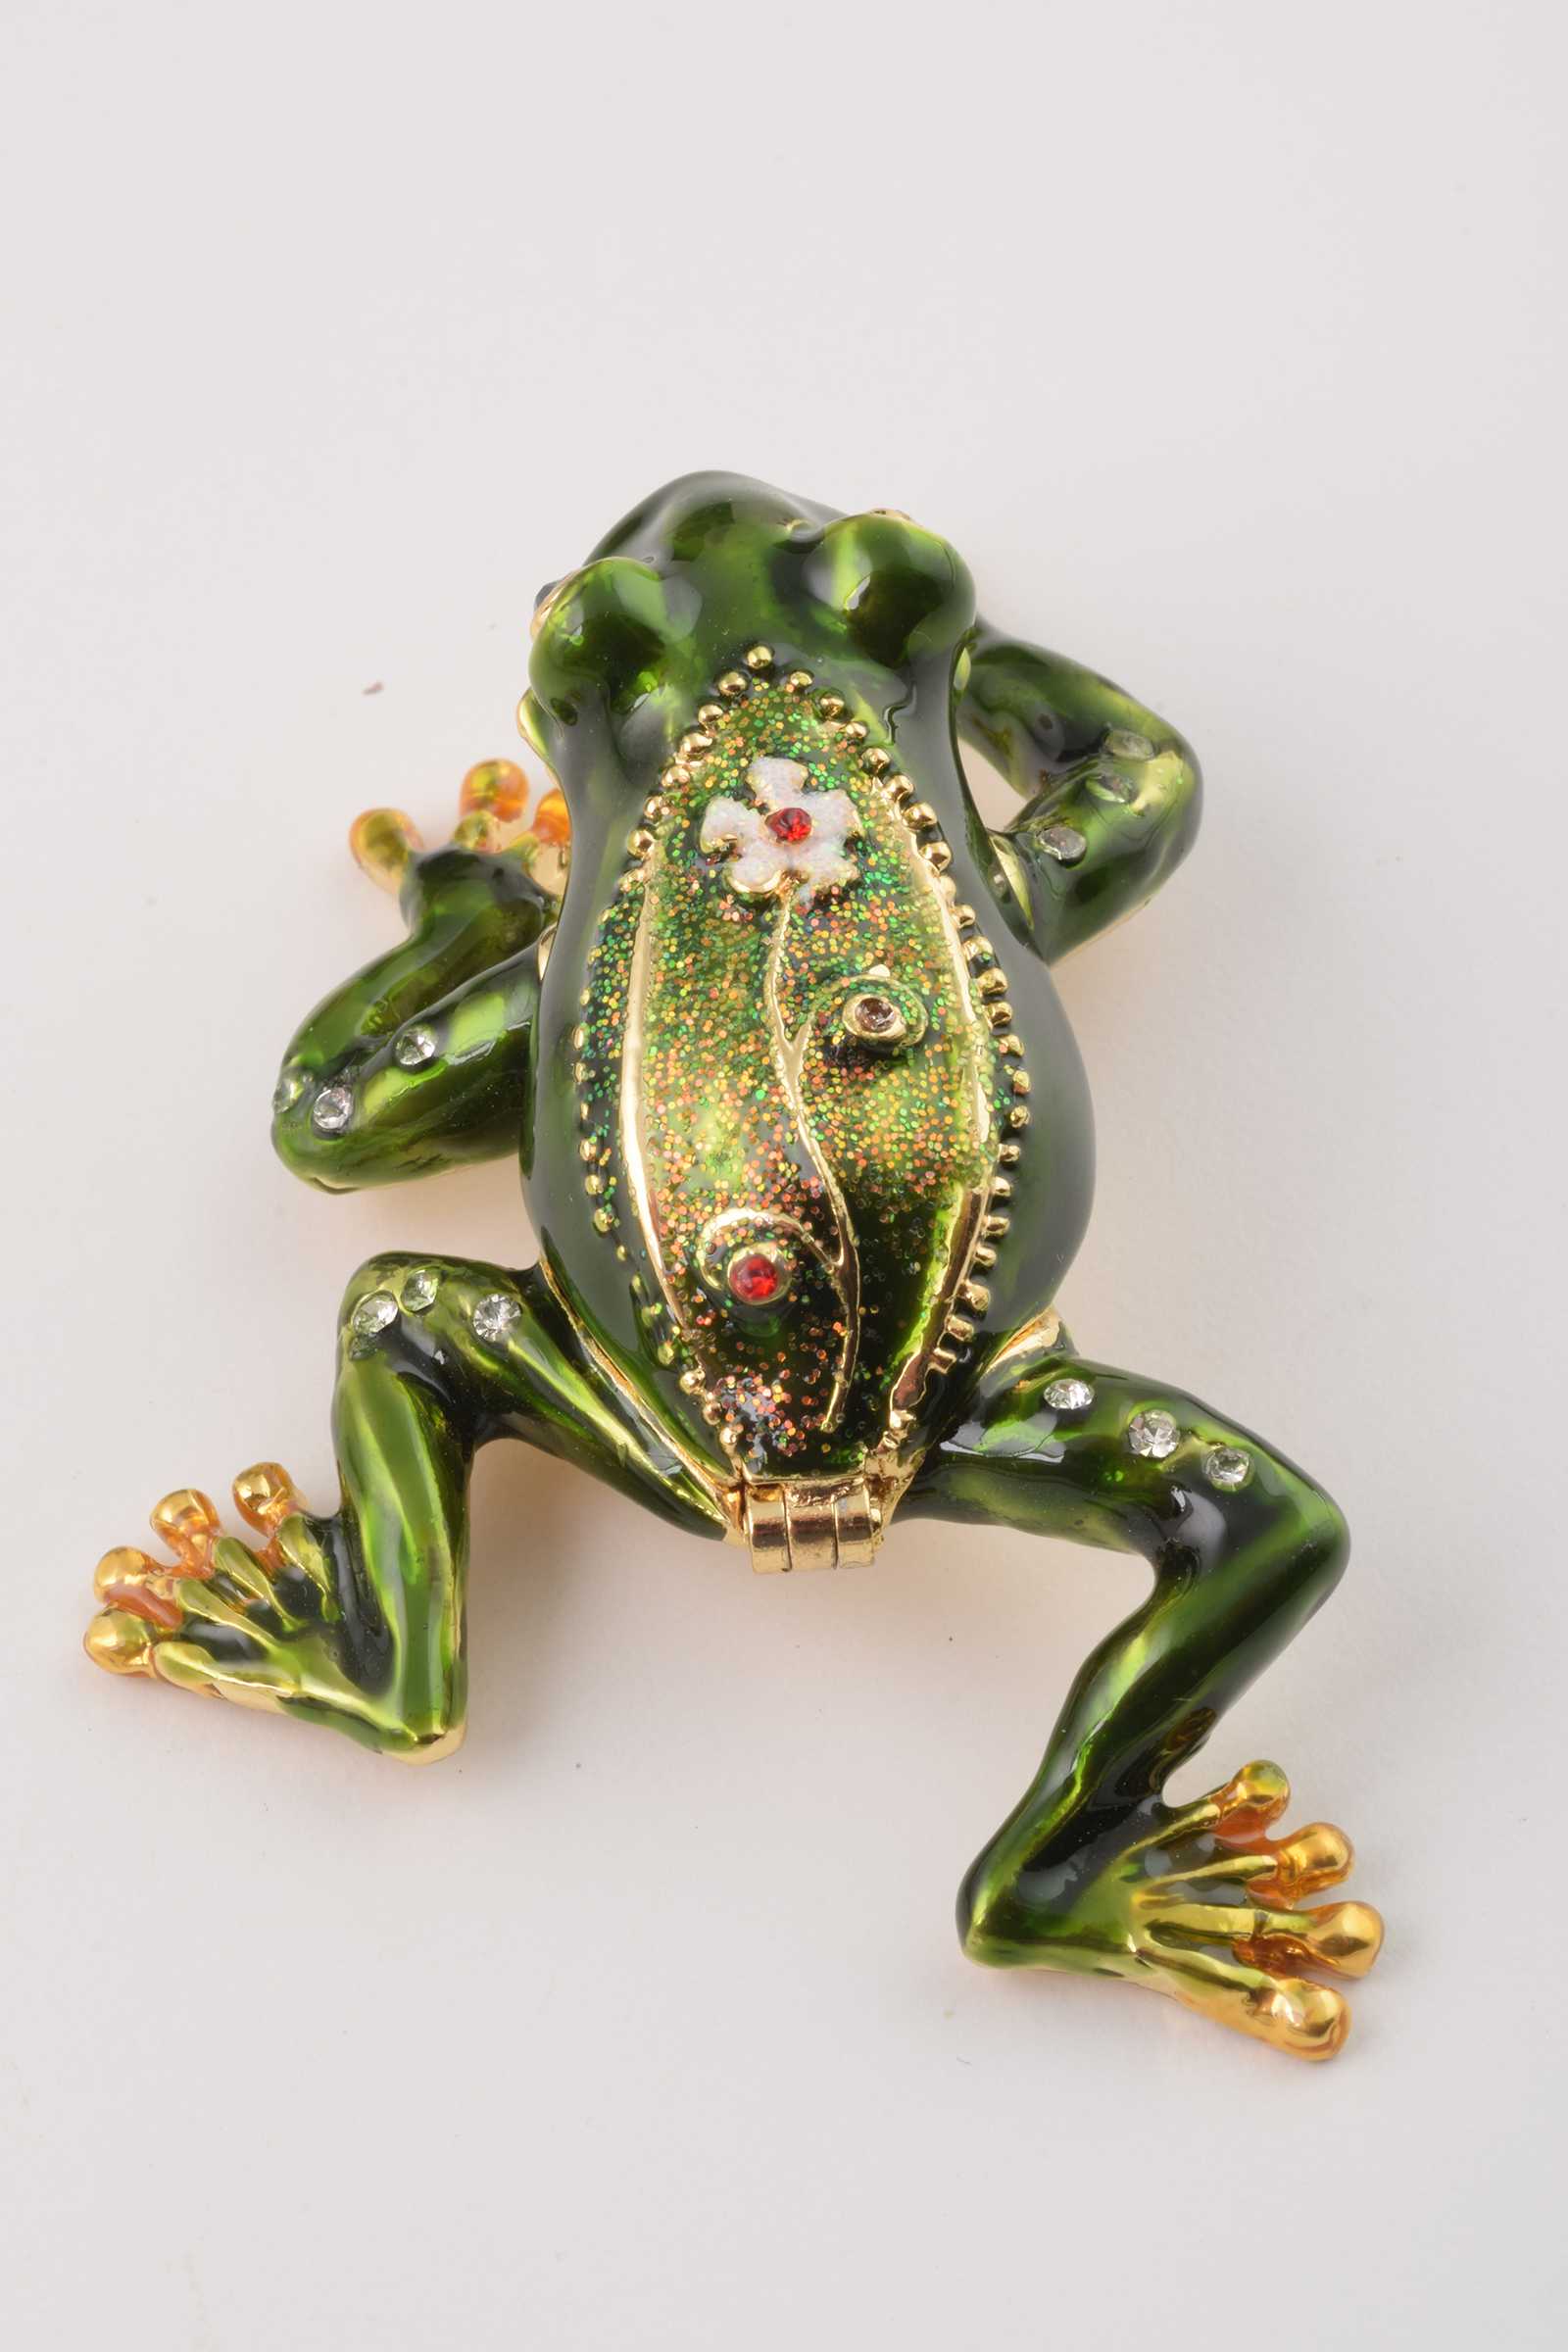 Keren Kopal Green Frog with a Flower  41.50